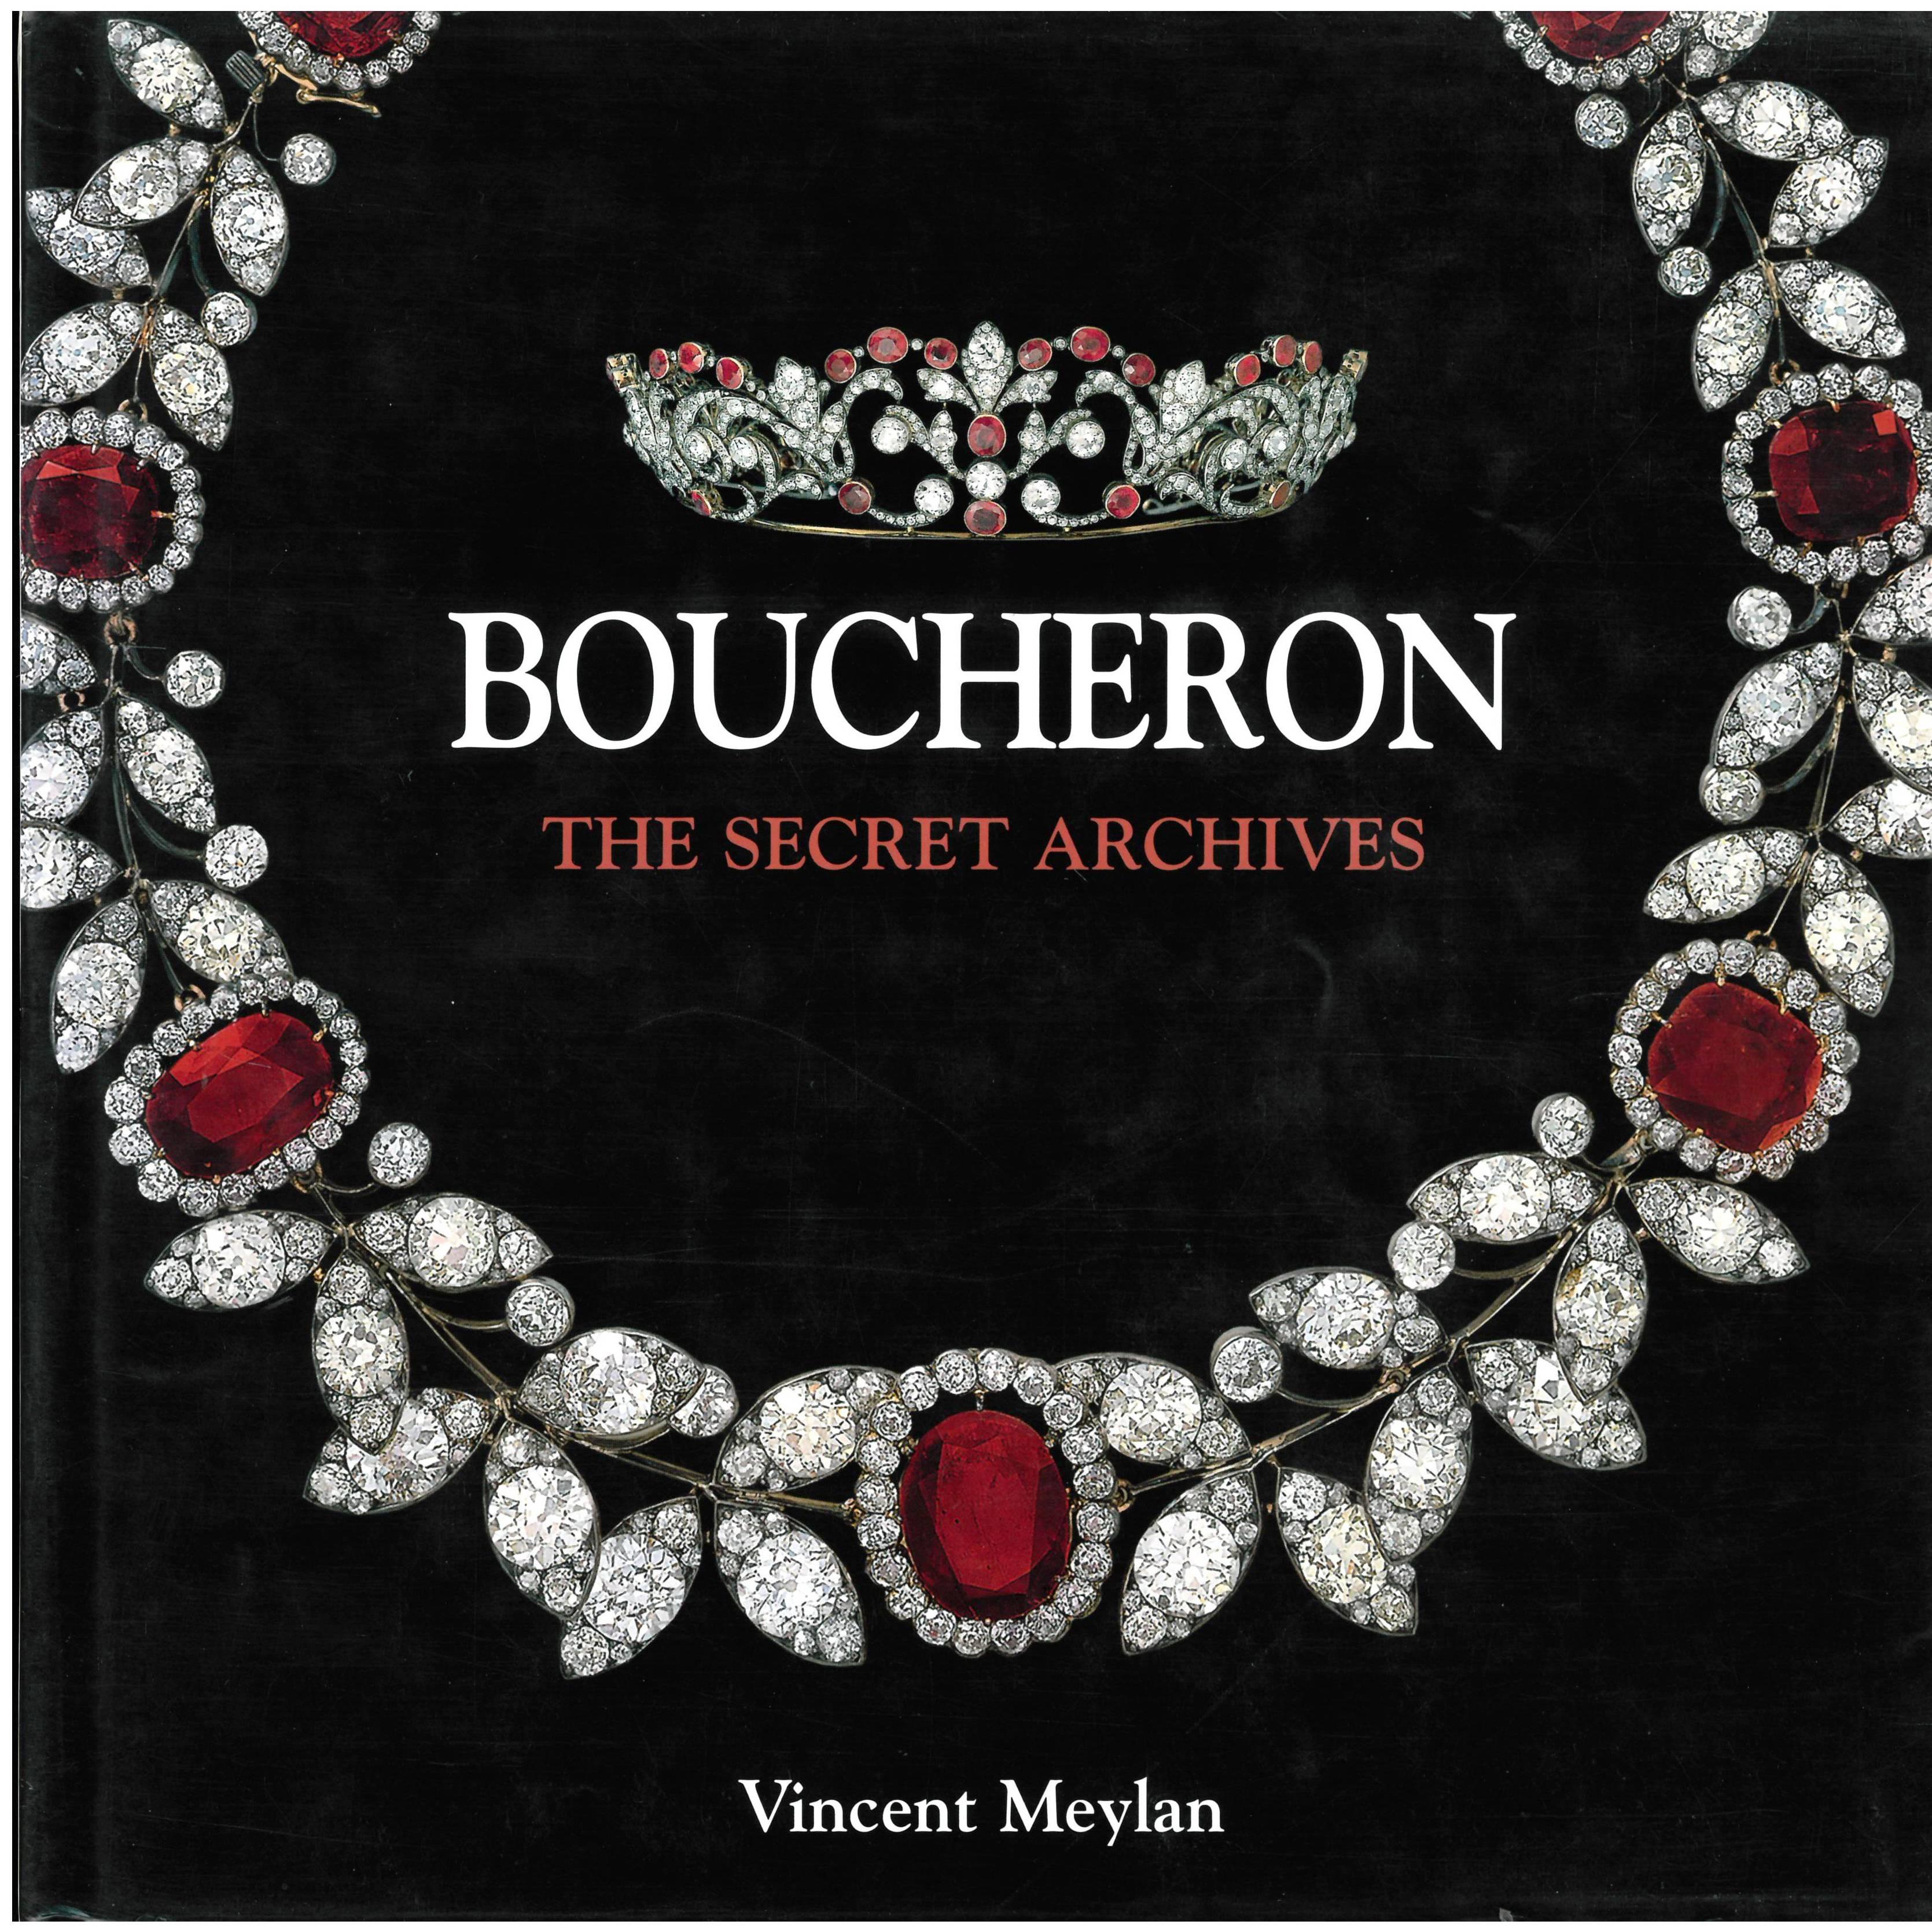 Book of BOUCHERON - The Secret Archives